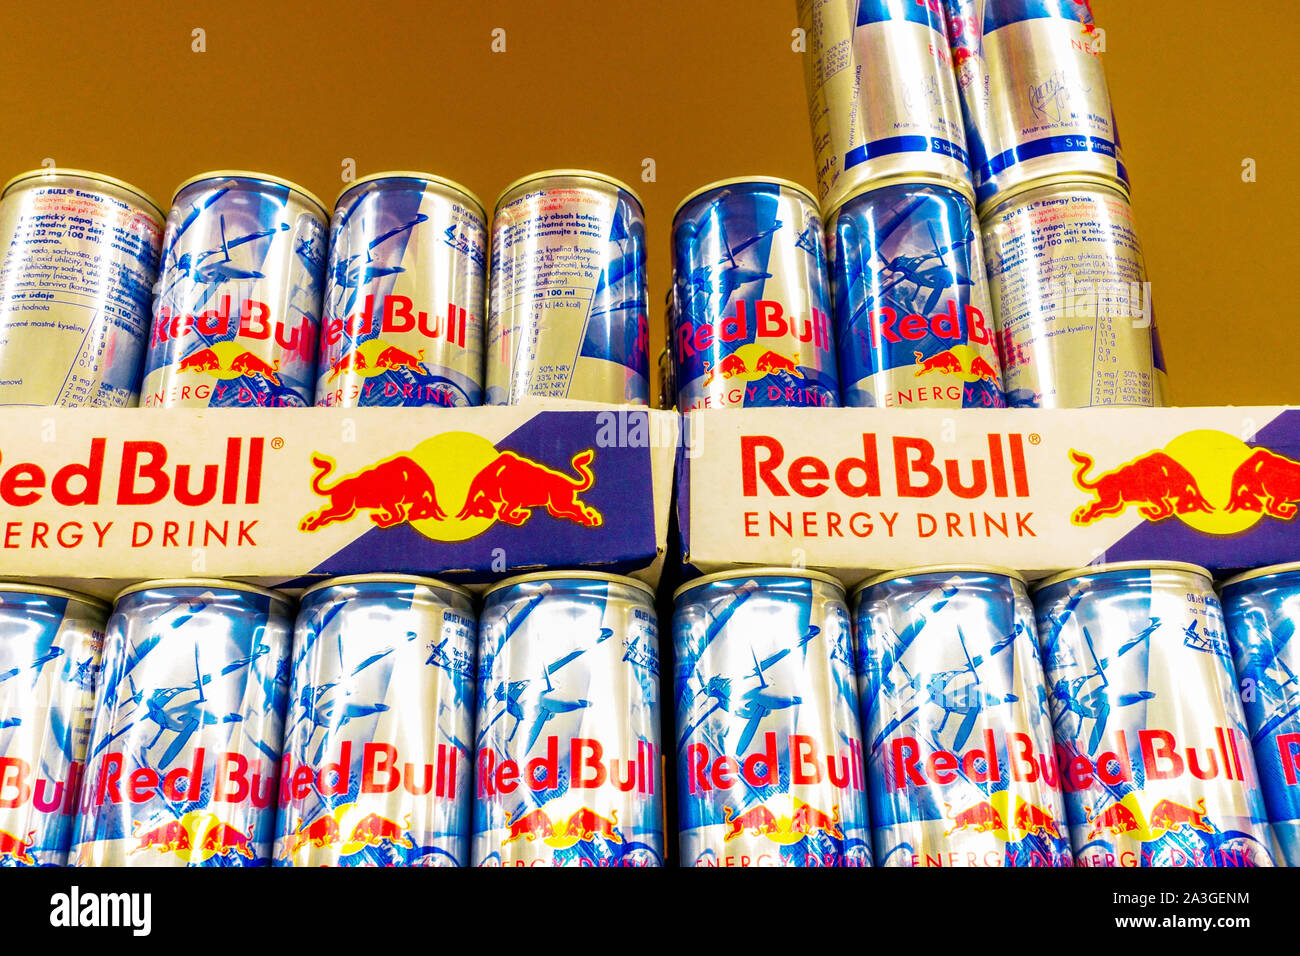 Red Bull Dosen Energy Drink Supermarkt Regal Stockfoto